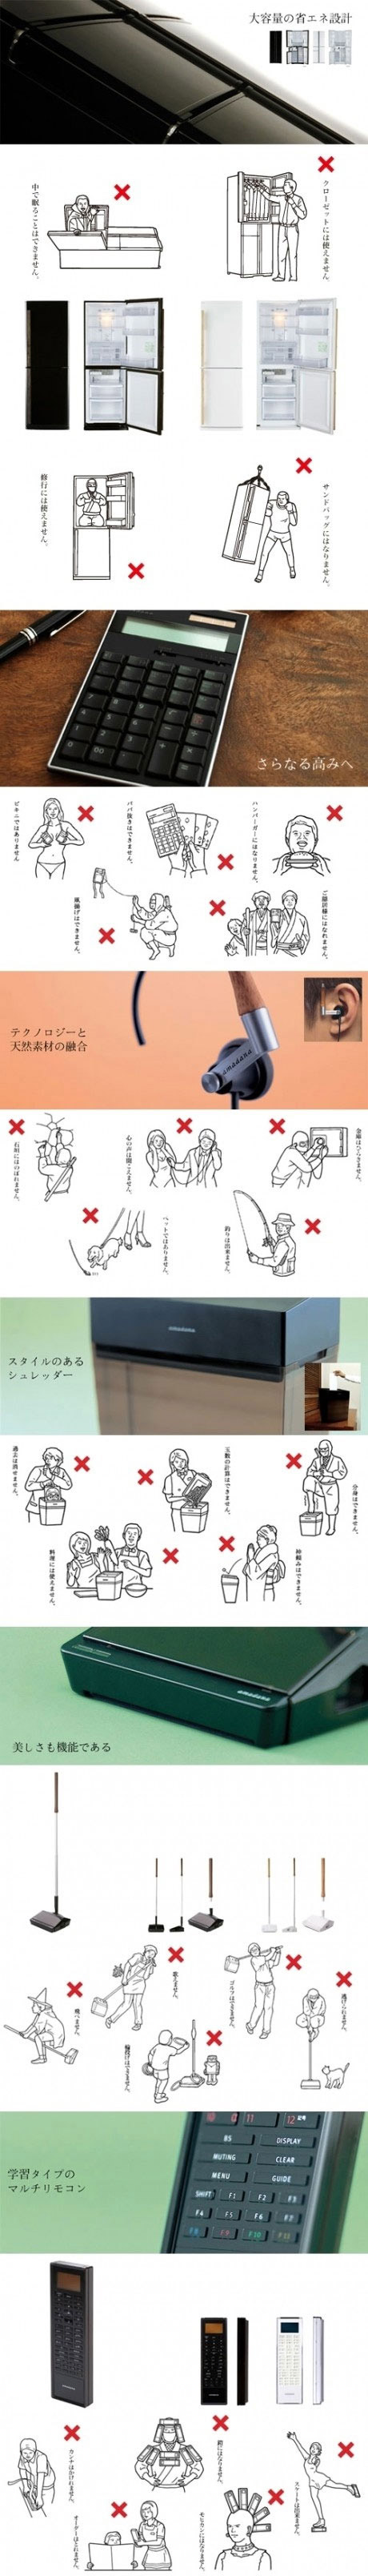 Graciosas instrucciones de seguridad japonesas